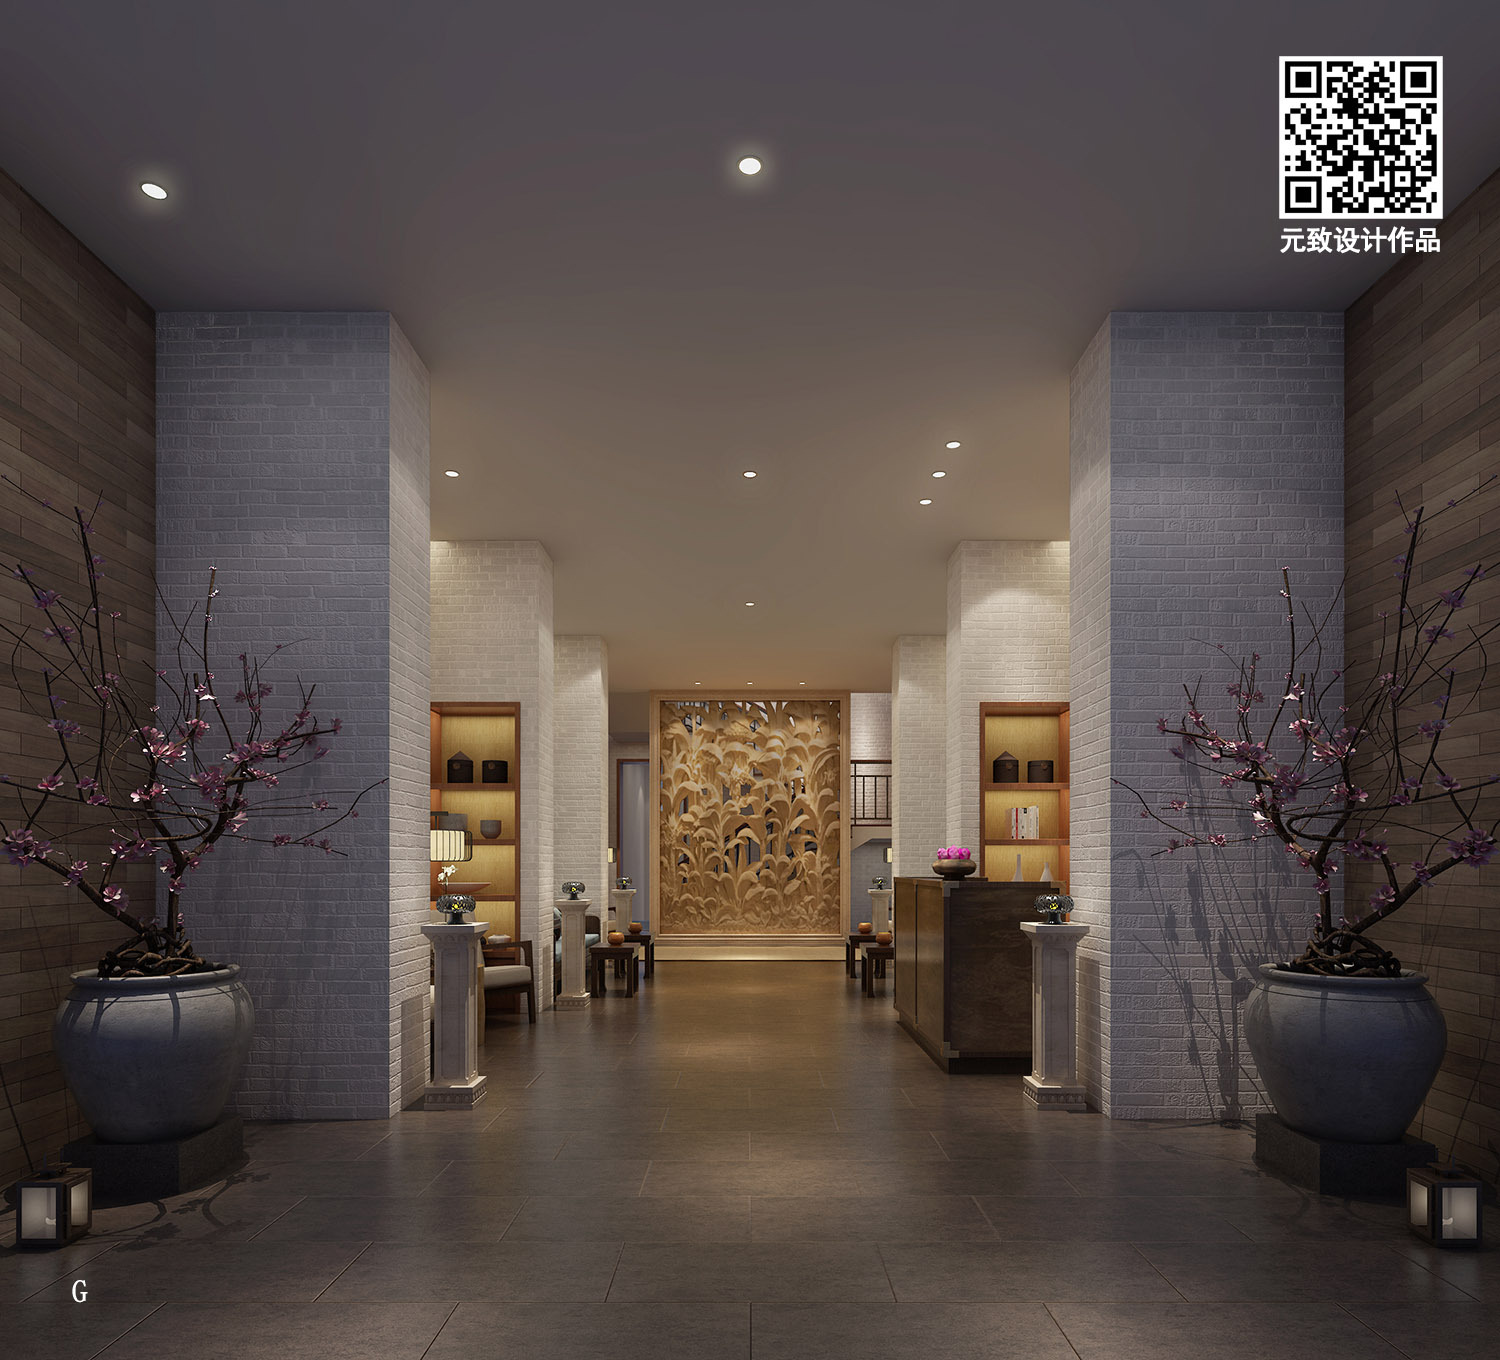 广州养生会所装修 新中式风格美容养生馆设计效果图